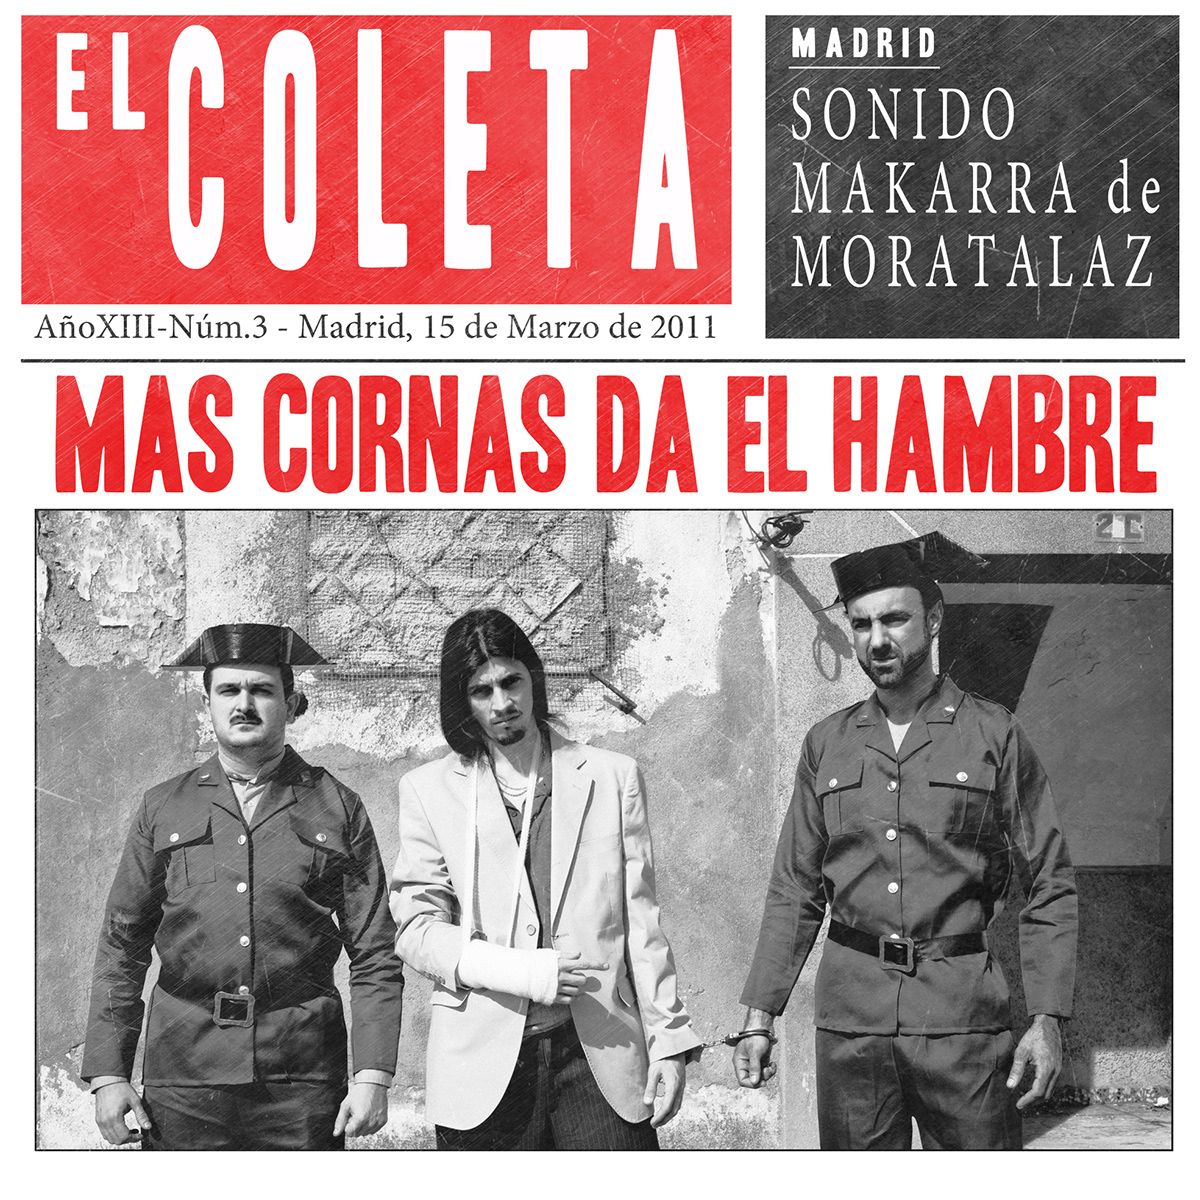 El Coleta hip-hop selectormarx LP Fotografia paste-up Quinqui MO spain Retro